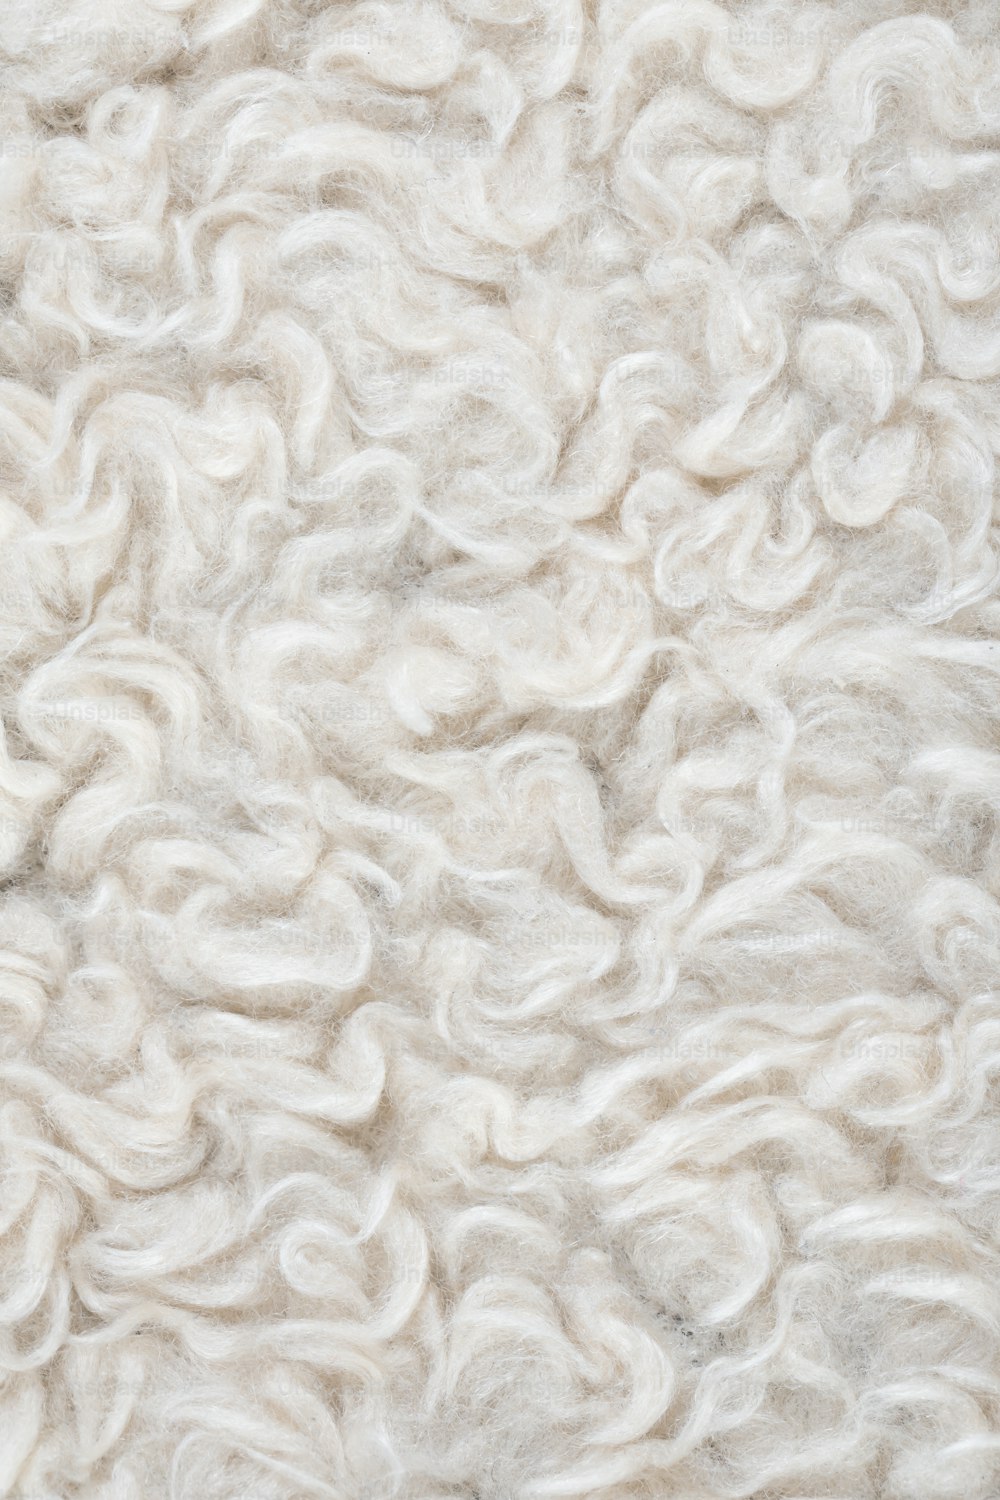 Gros plan de la texture de la laine d’un mouton